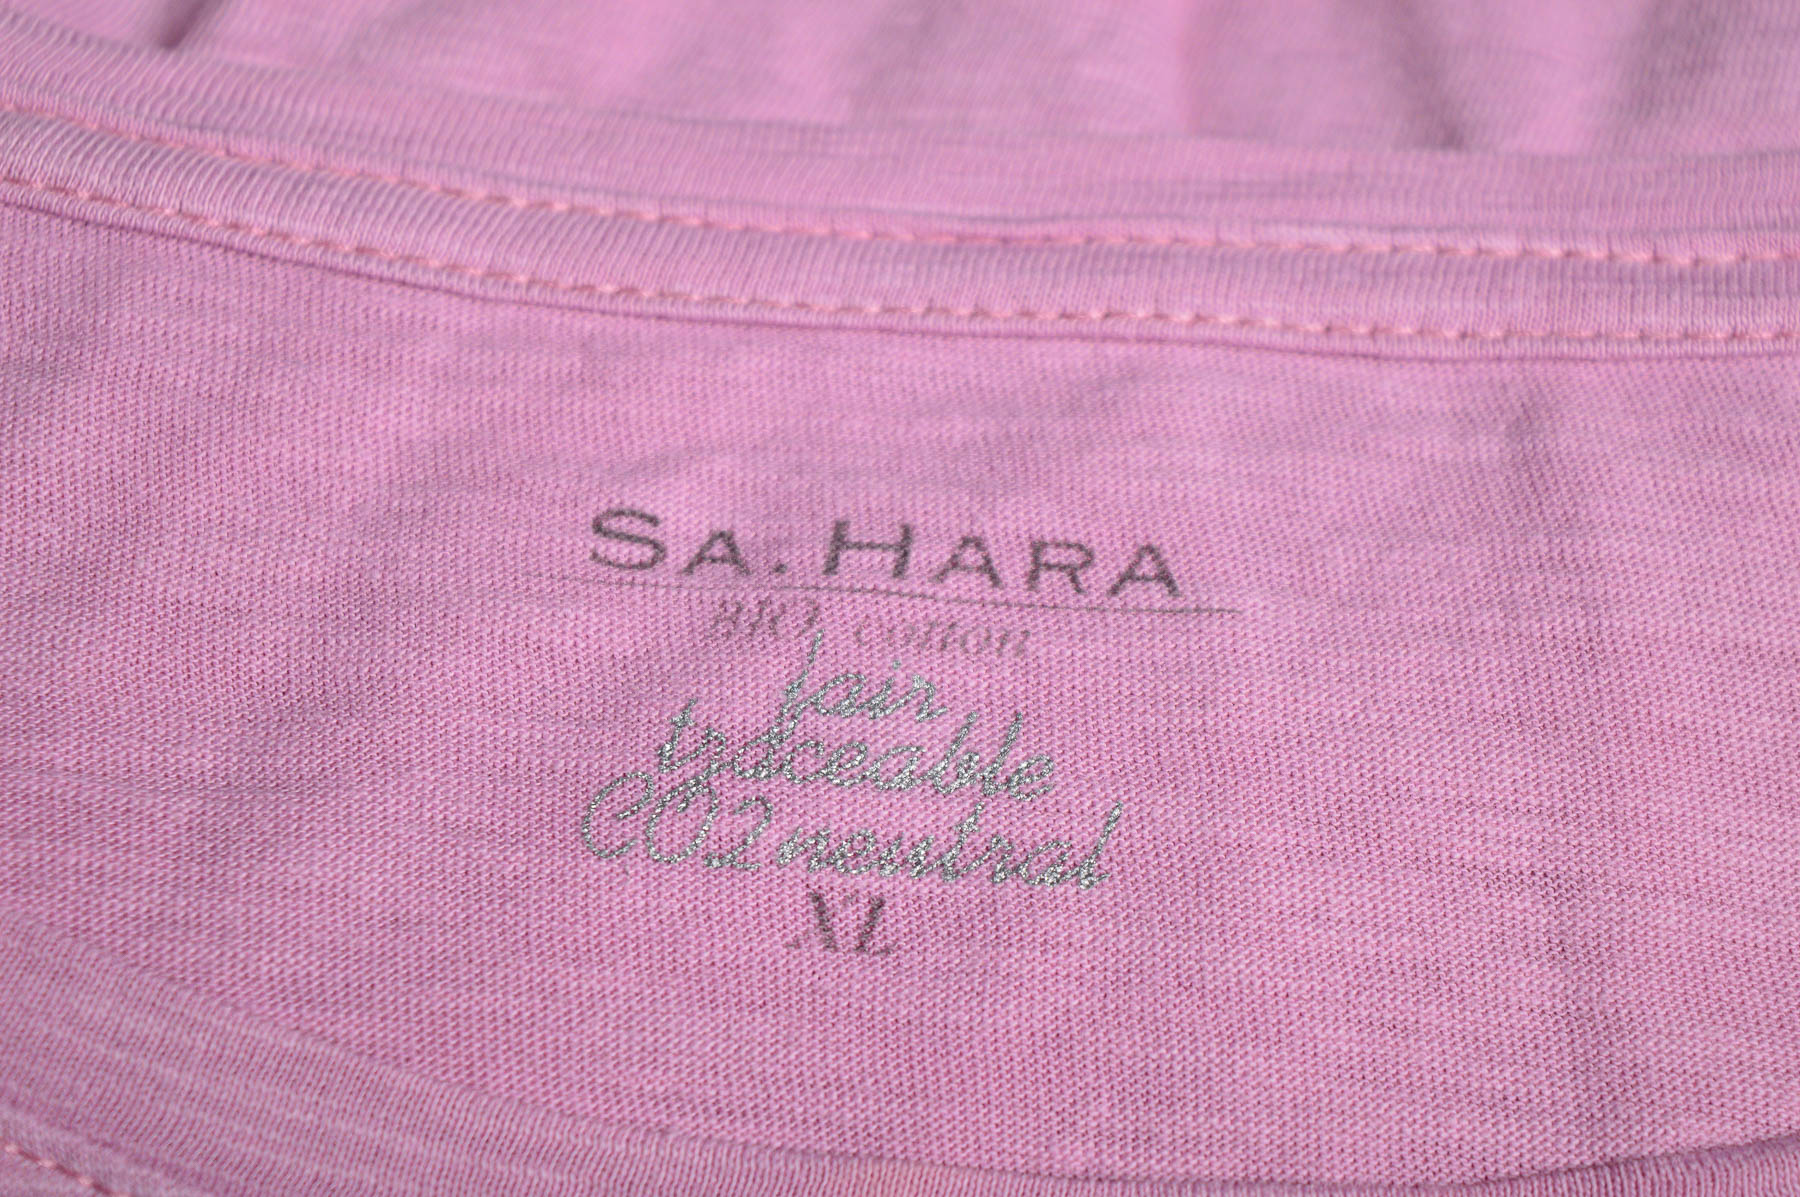 Γυναικεία μπλούζα - Sa.Hara - 2